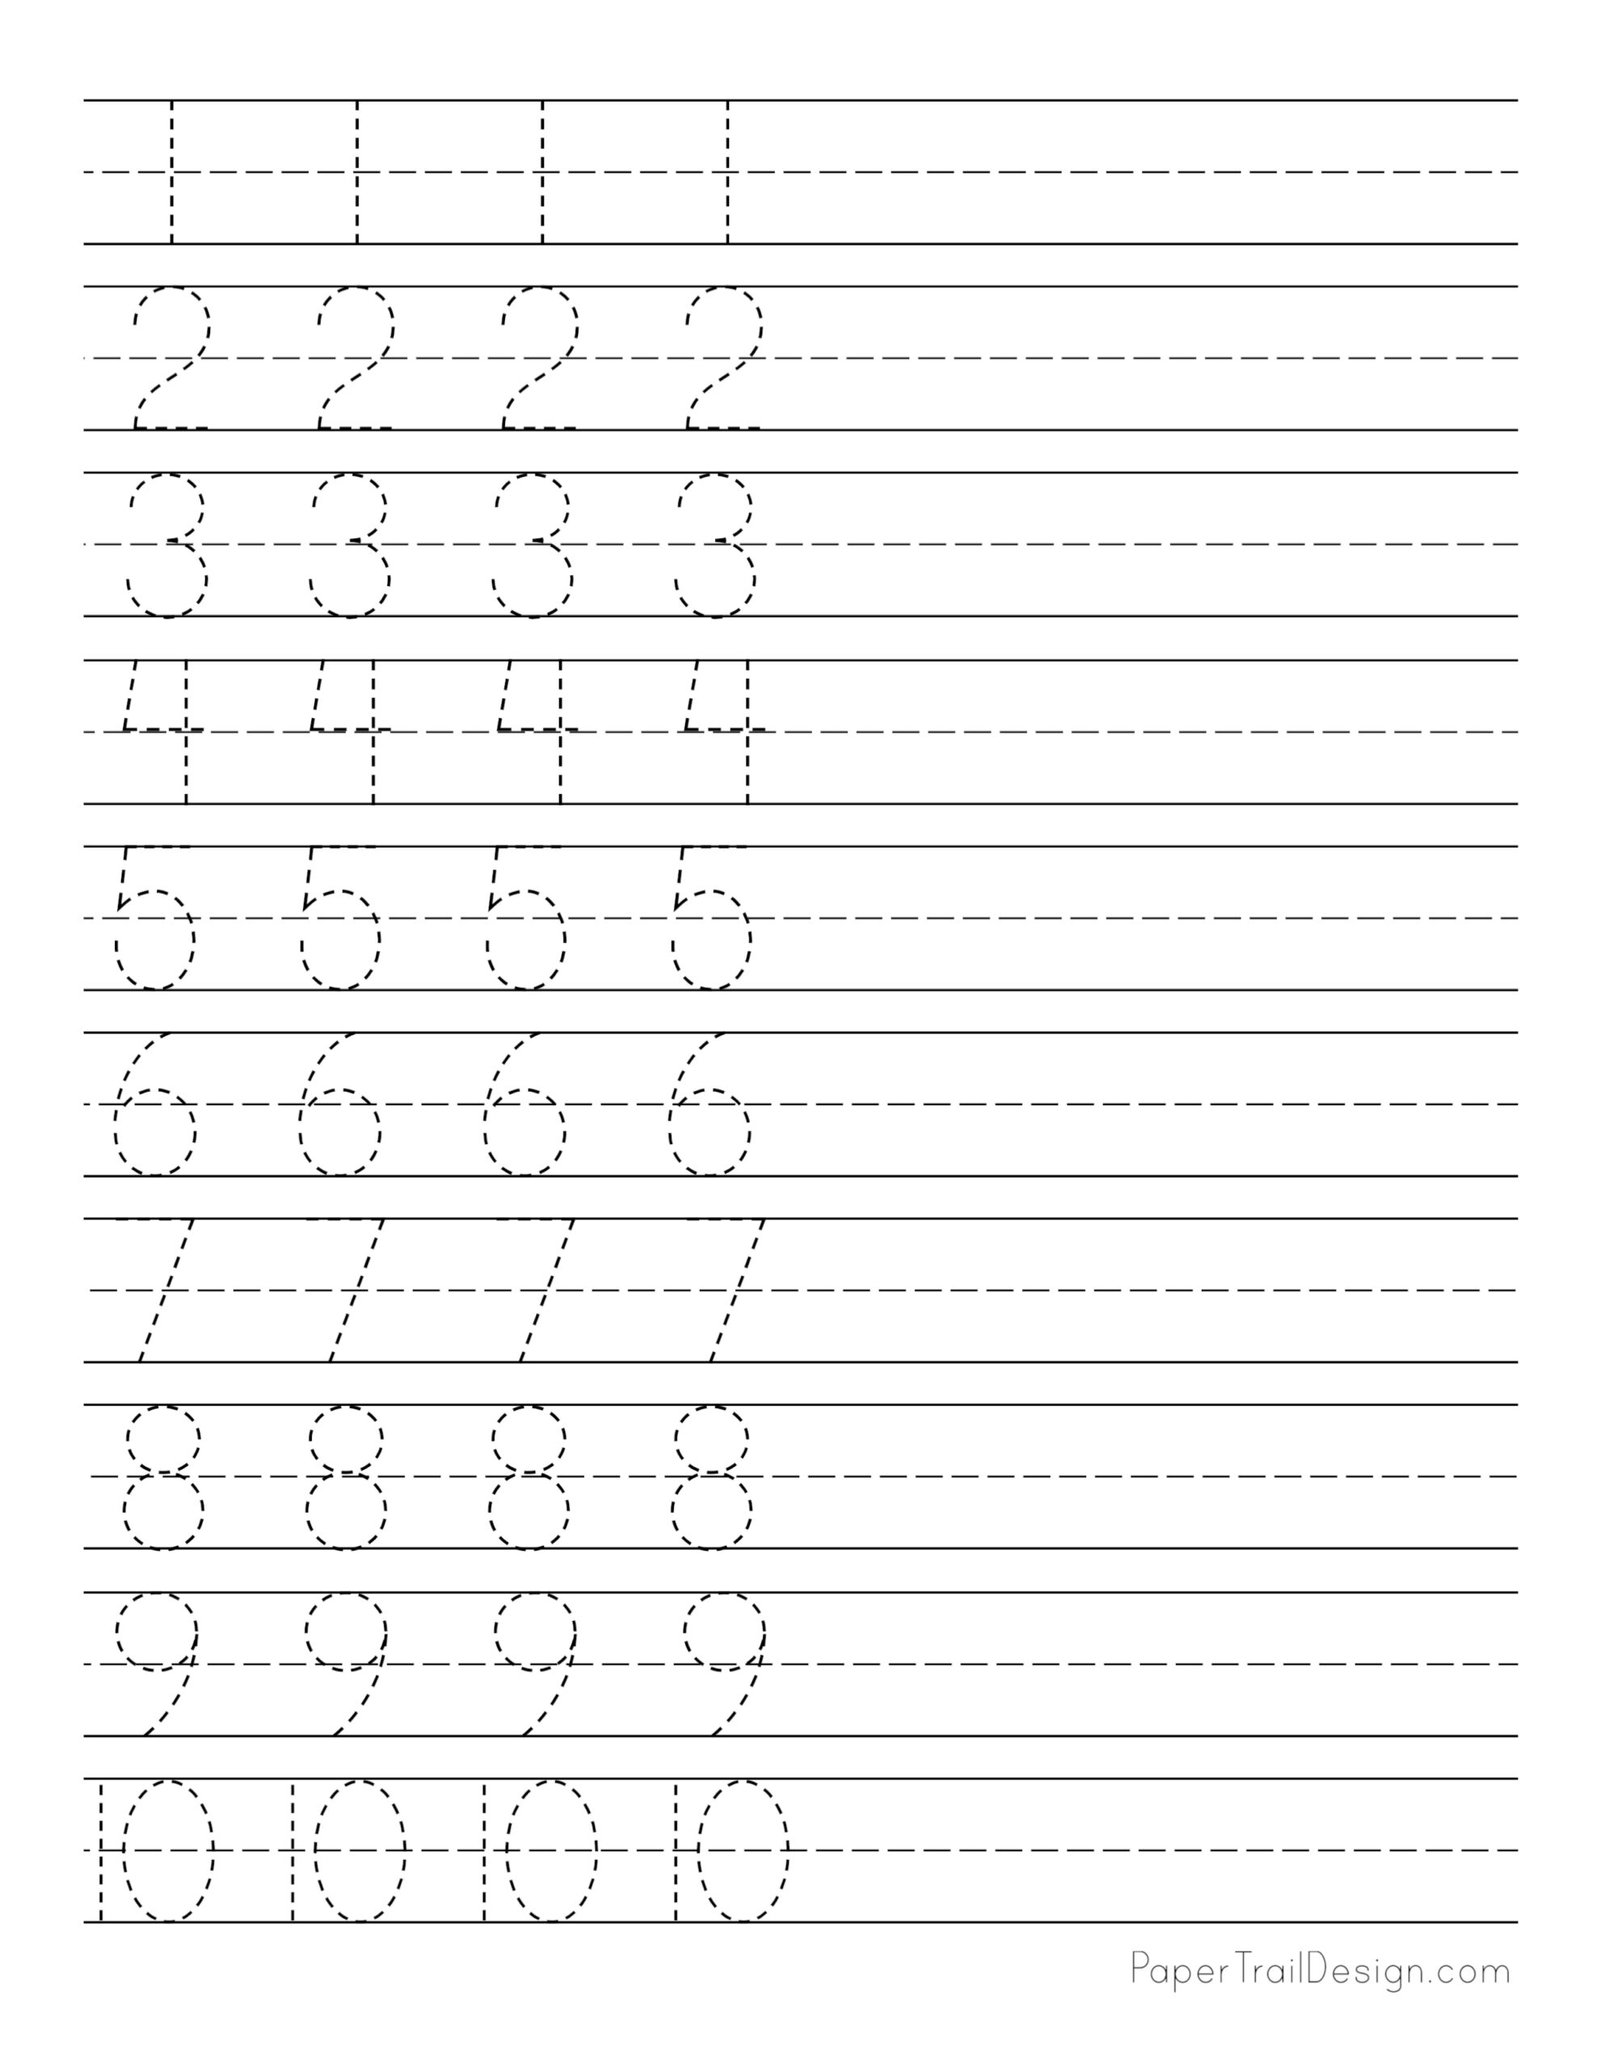 number-tracing-1-10-worksheet-free-printable-worksheets-free-printable-numbers-1-10